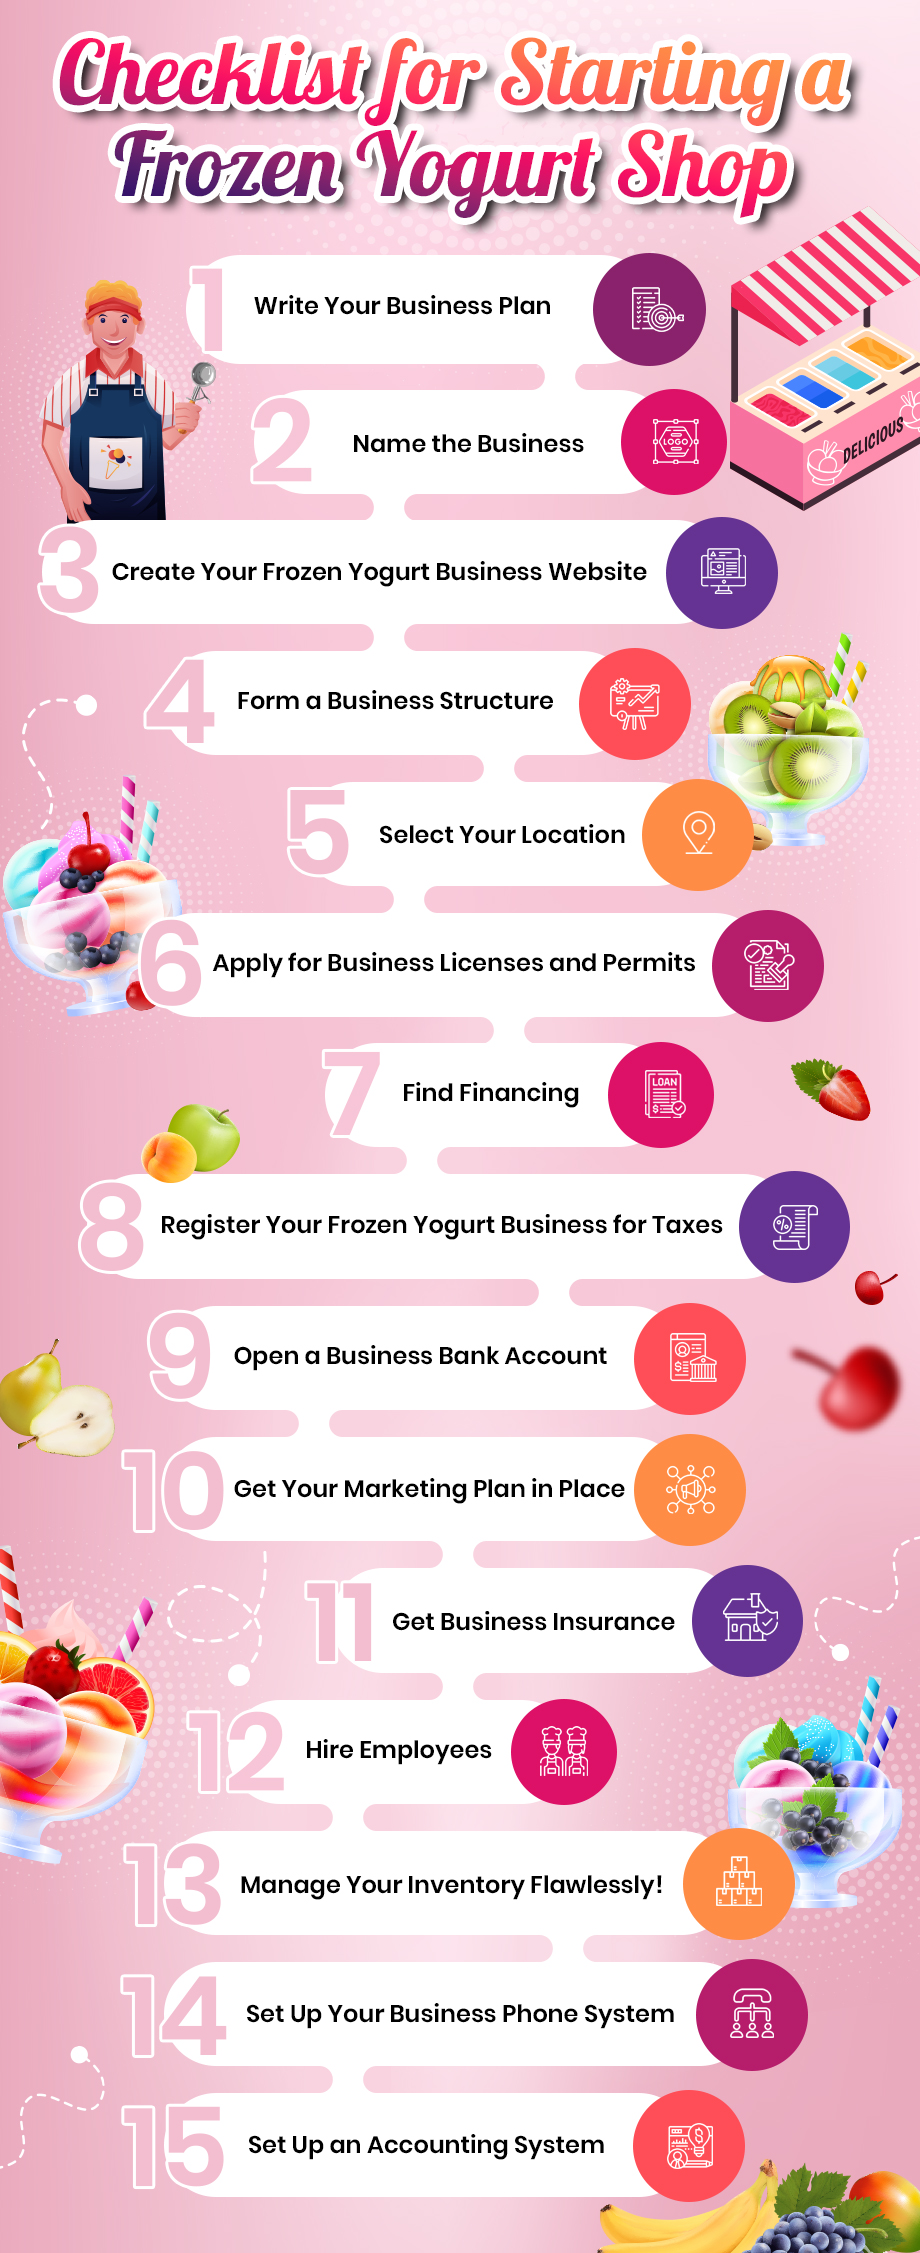 Checklist for starting a frozen yogurt shop